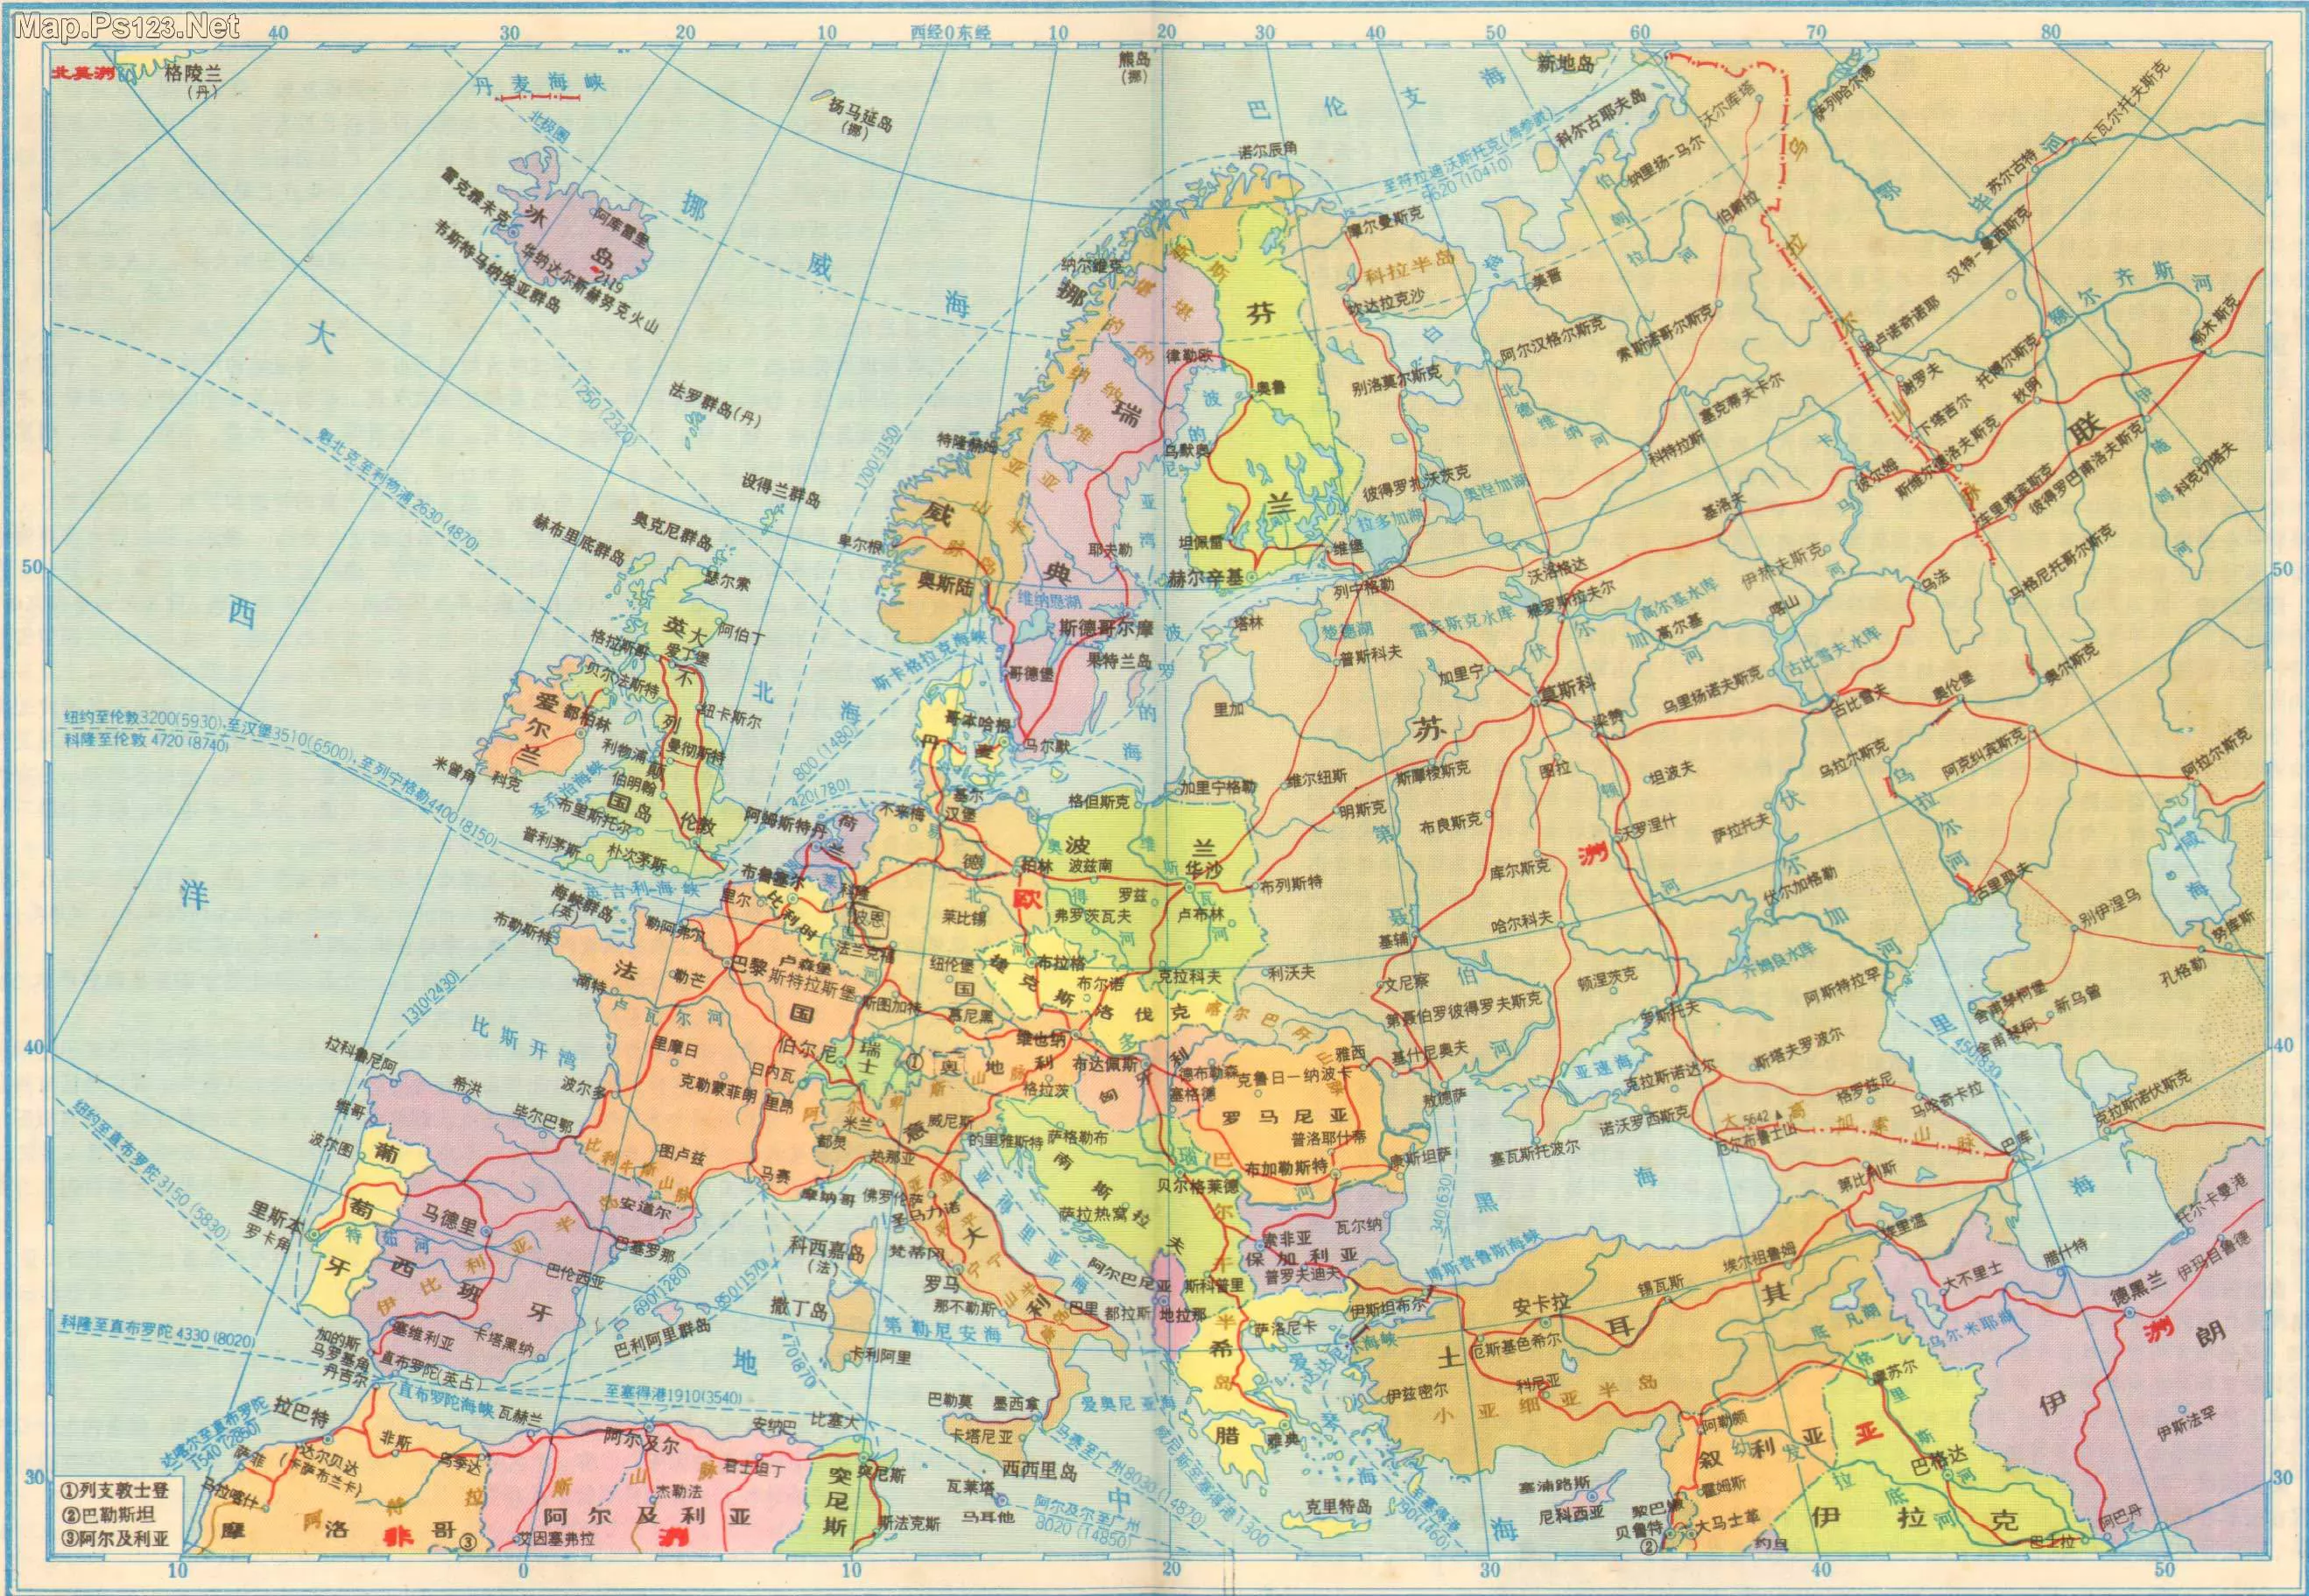 德国地形图 - 德国地图 - 地理教师网